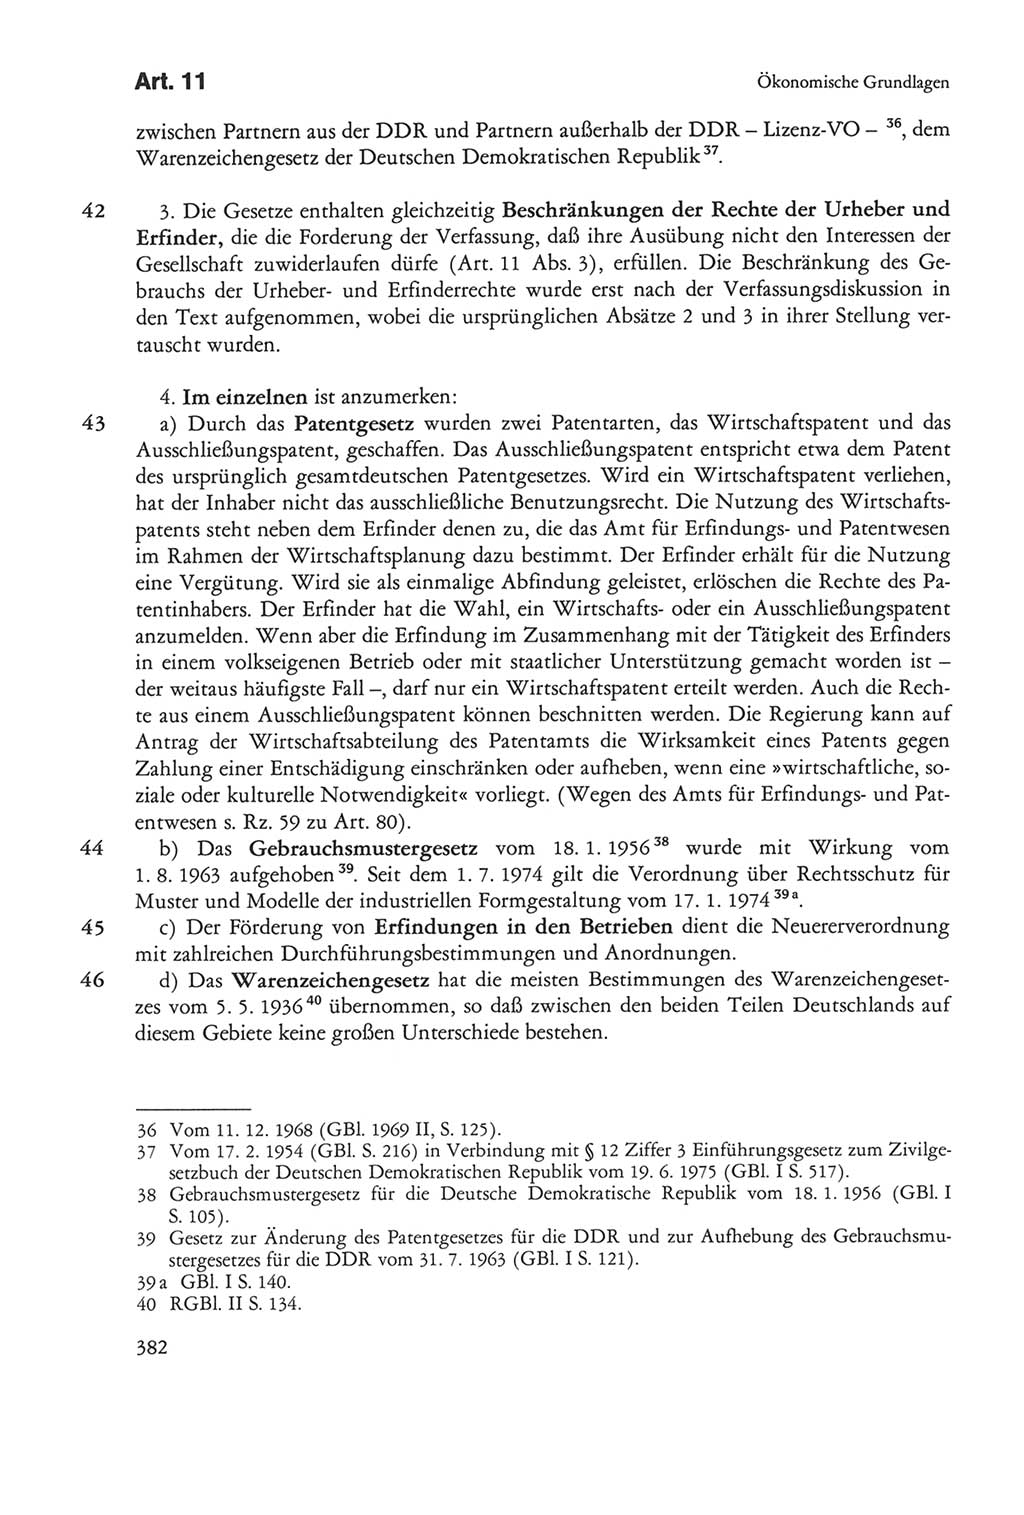 Die sozialistische Verfassung der Deutschen Demokratischen Republik (DDR), Kommentar 1982, Seite 382 (Soz. Verf. DDR Komm. 1982, S. 382)